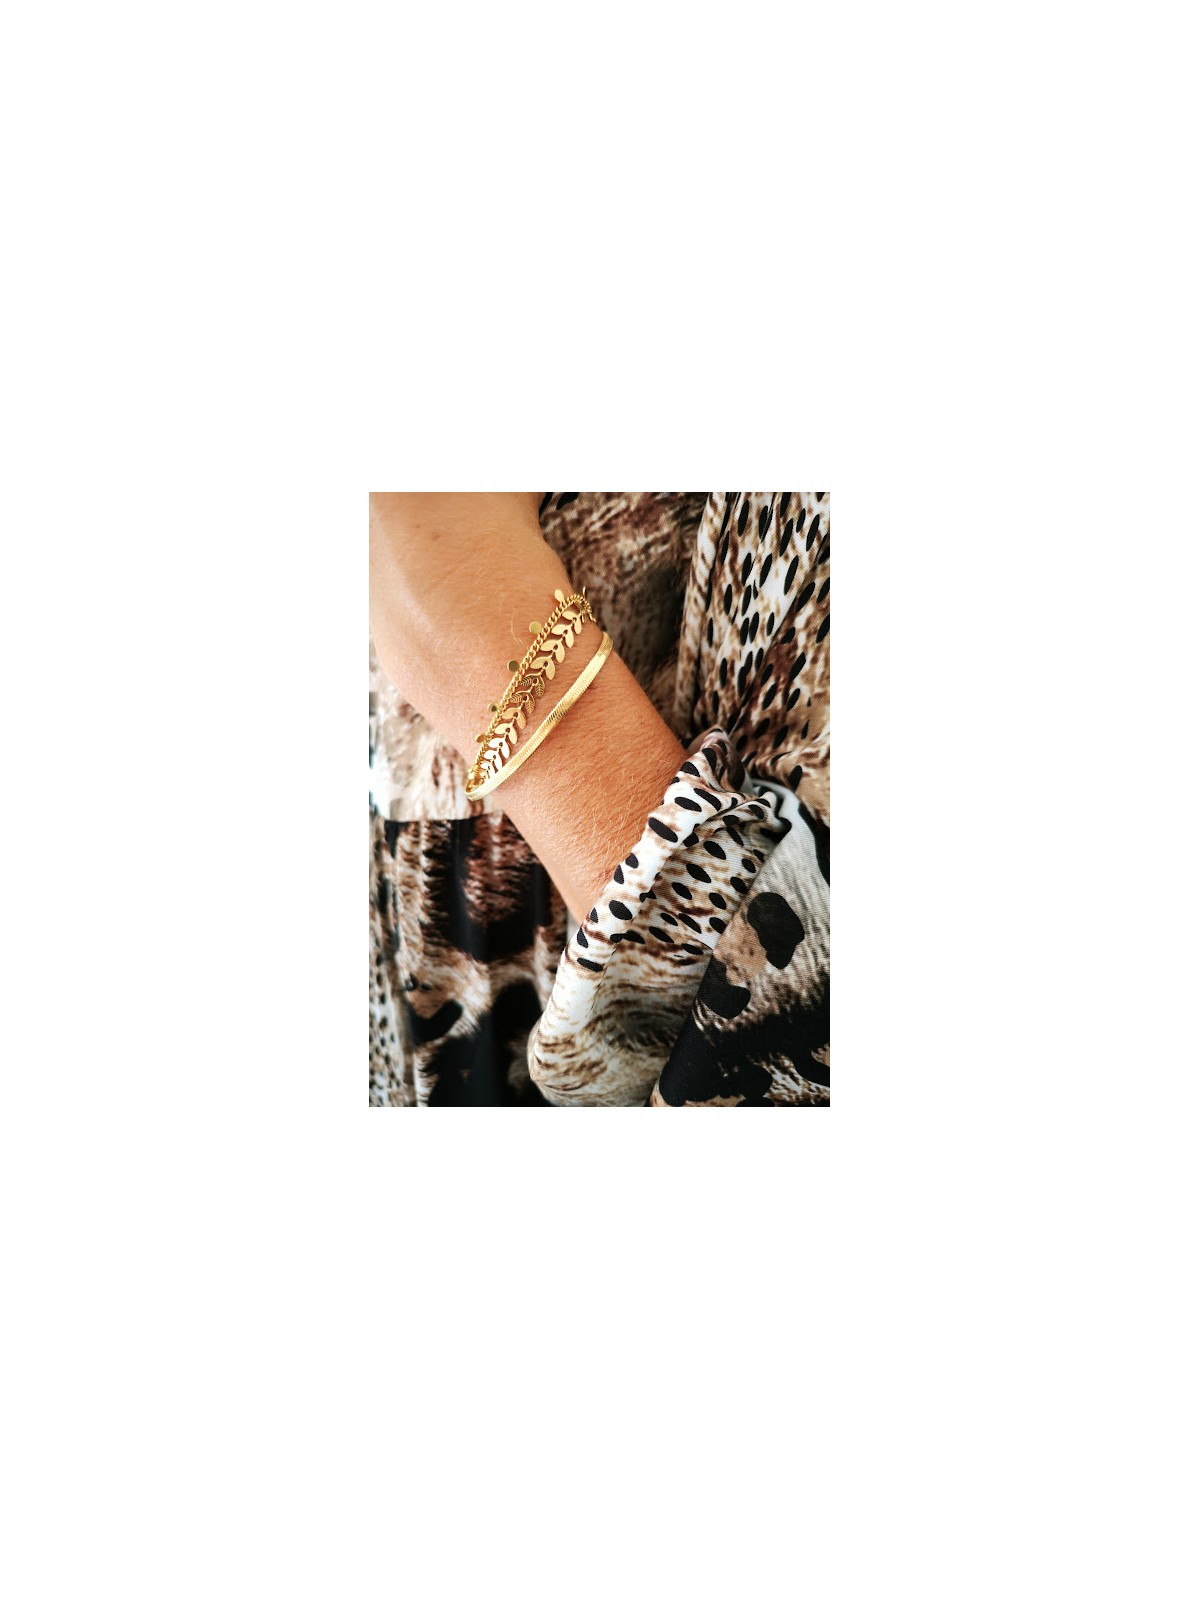 Bracelet 3 rangs dorés l 1 vue porté l Tilleulmenthe mode boutique de vêtements femme en ligne